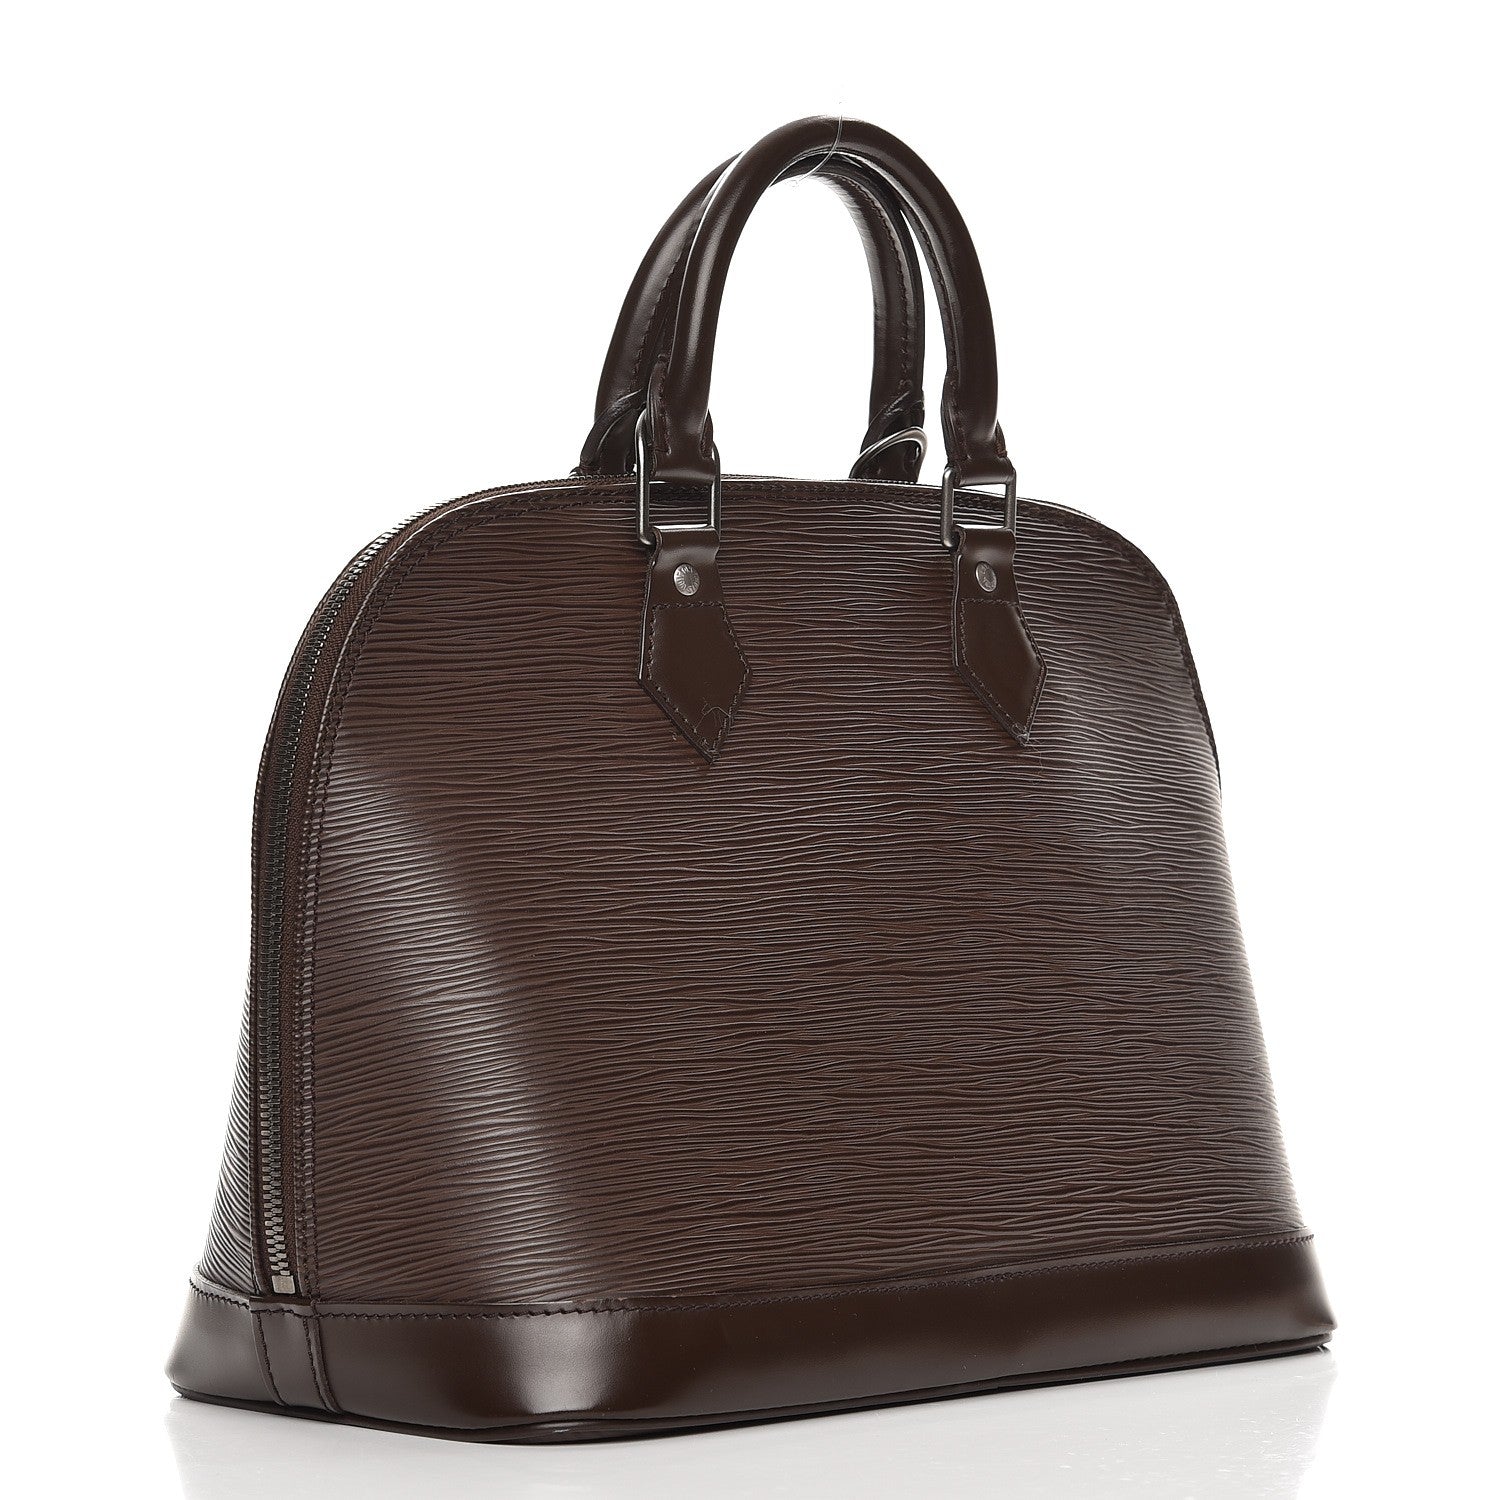 Authentic Louis Vuitton Black EPI Leather Alma PM Hand Bag